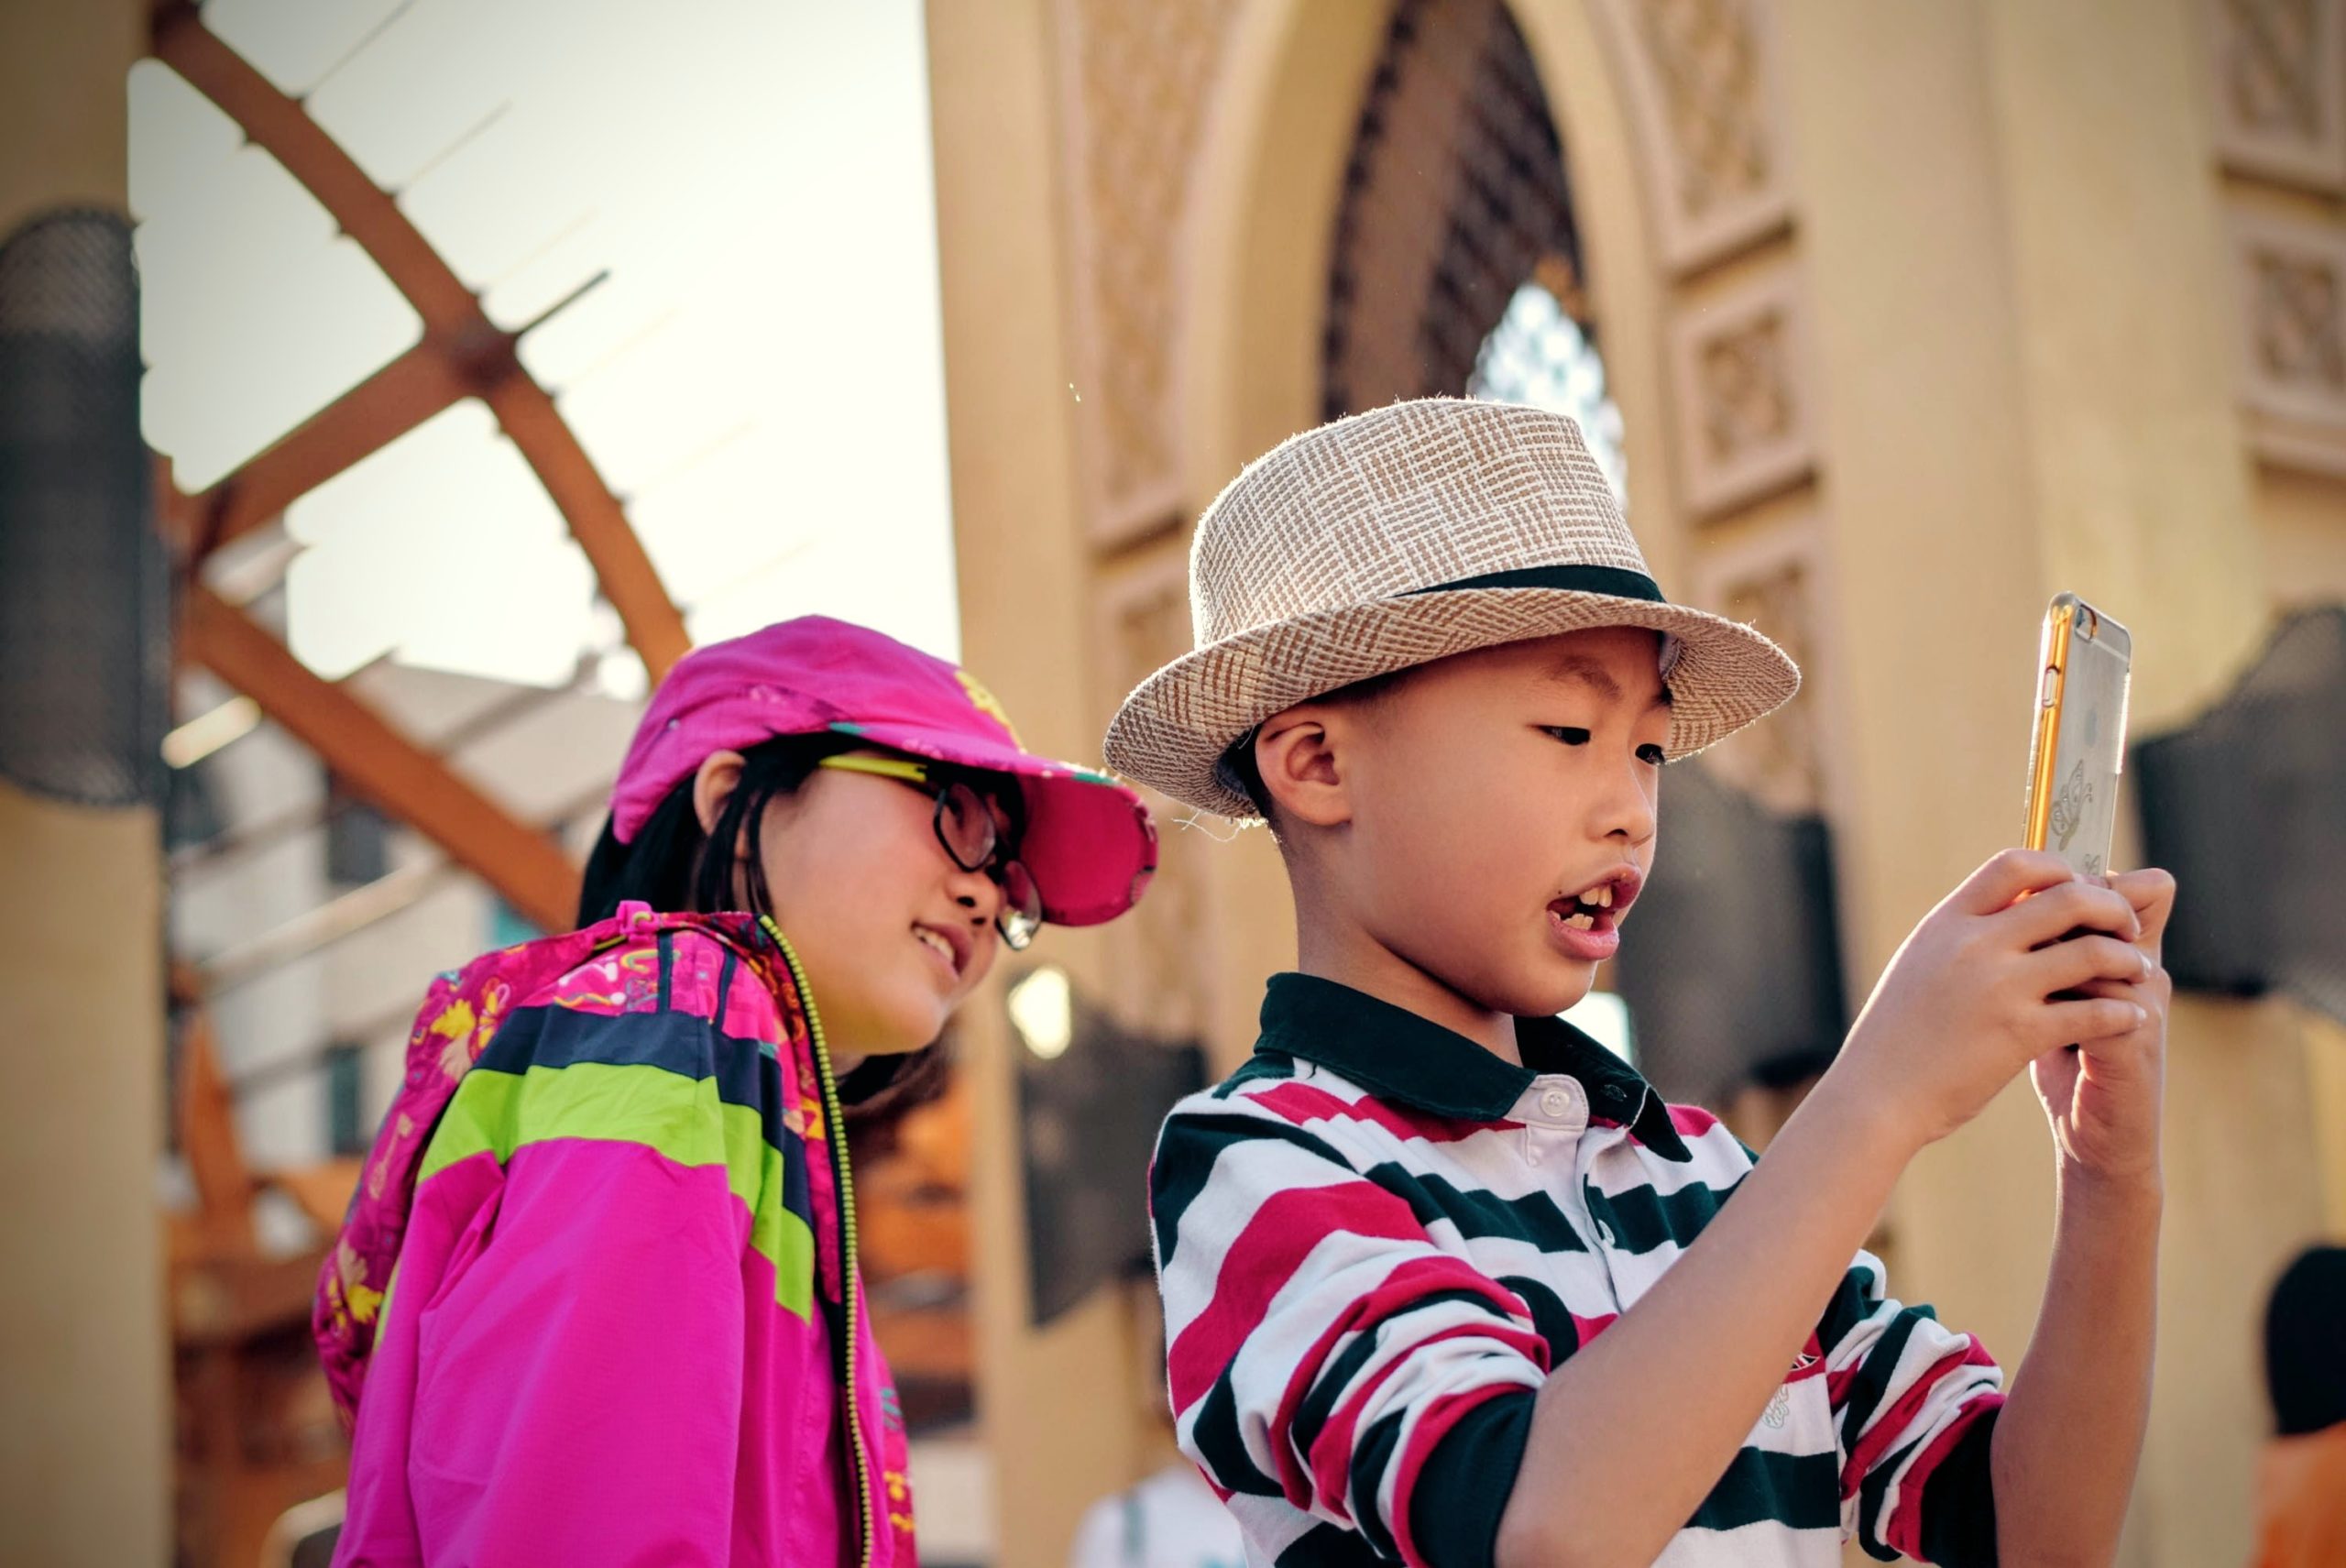 Turistas chinos: De viajar en grupo a viajar independientemente